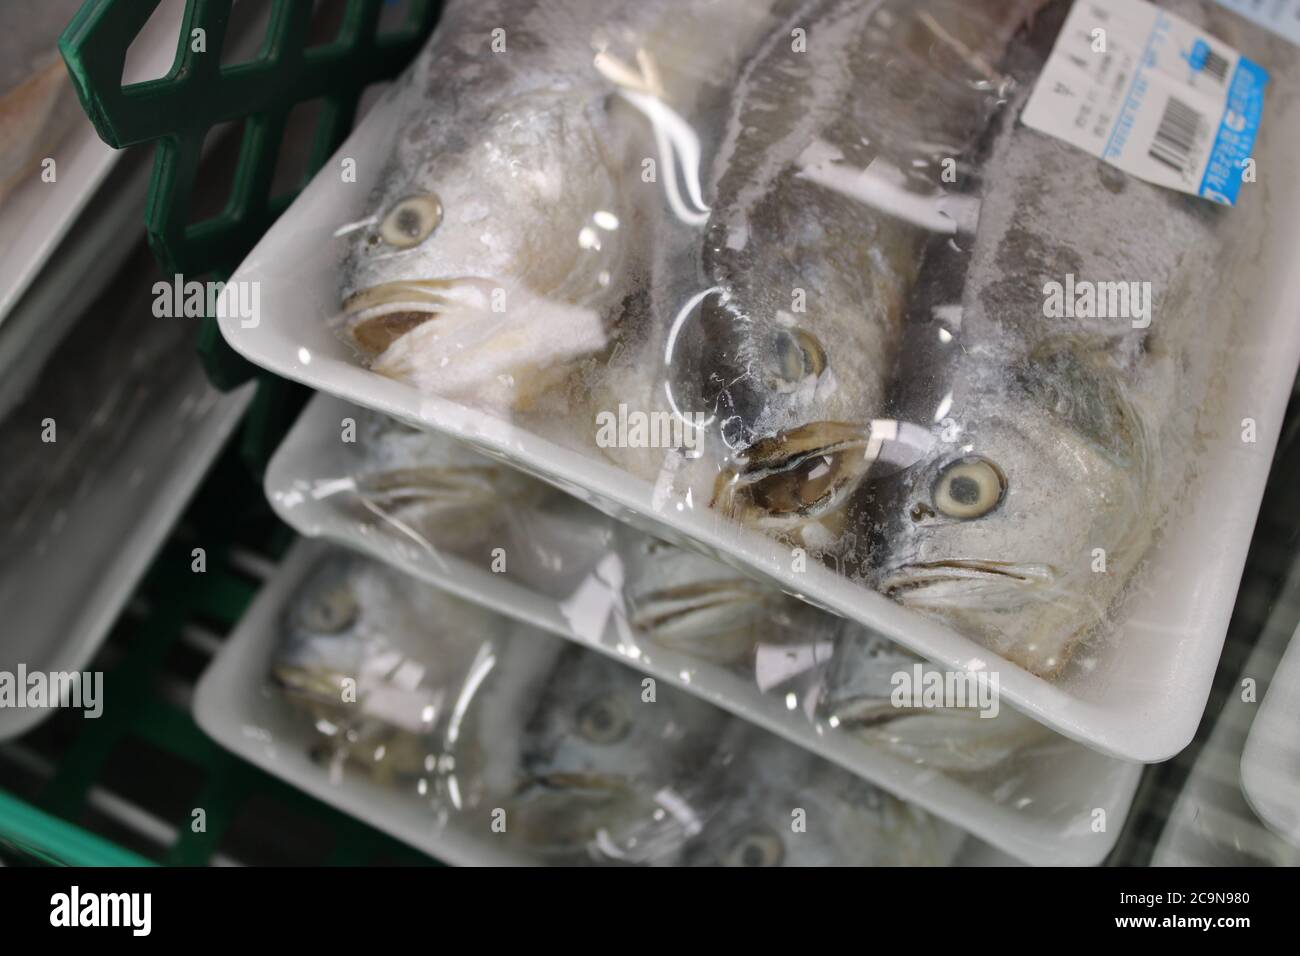 Poisson congelé aux expressions du visage conservées, dans un emballage en plastique, dans un supermarché asiatique Banque D'Images